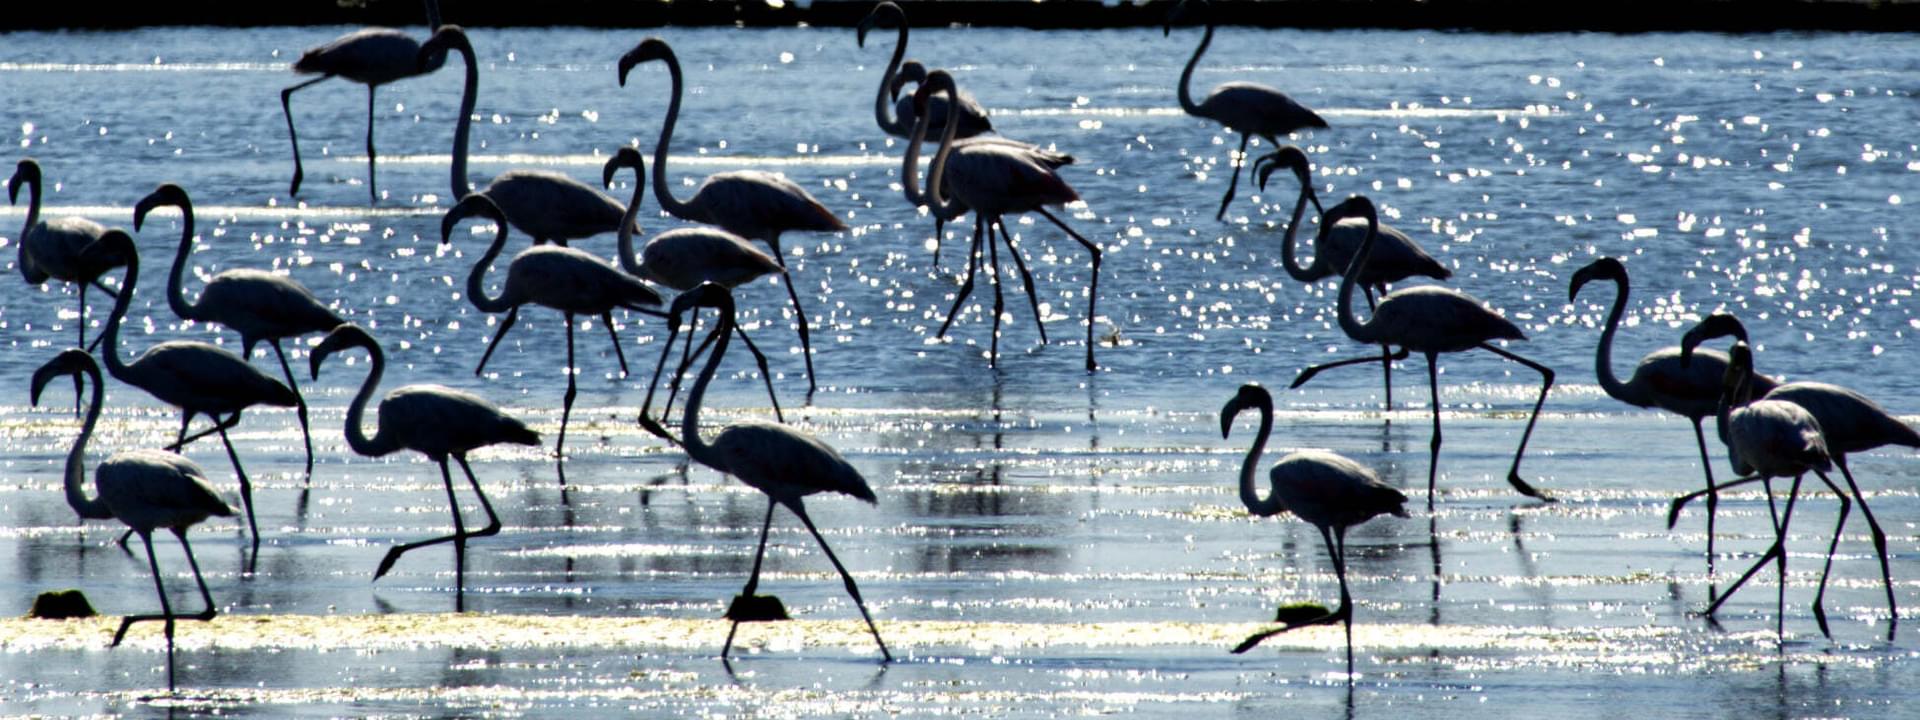 Flamingos in Morraceira-Insel